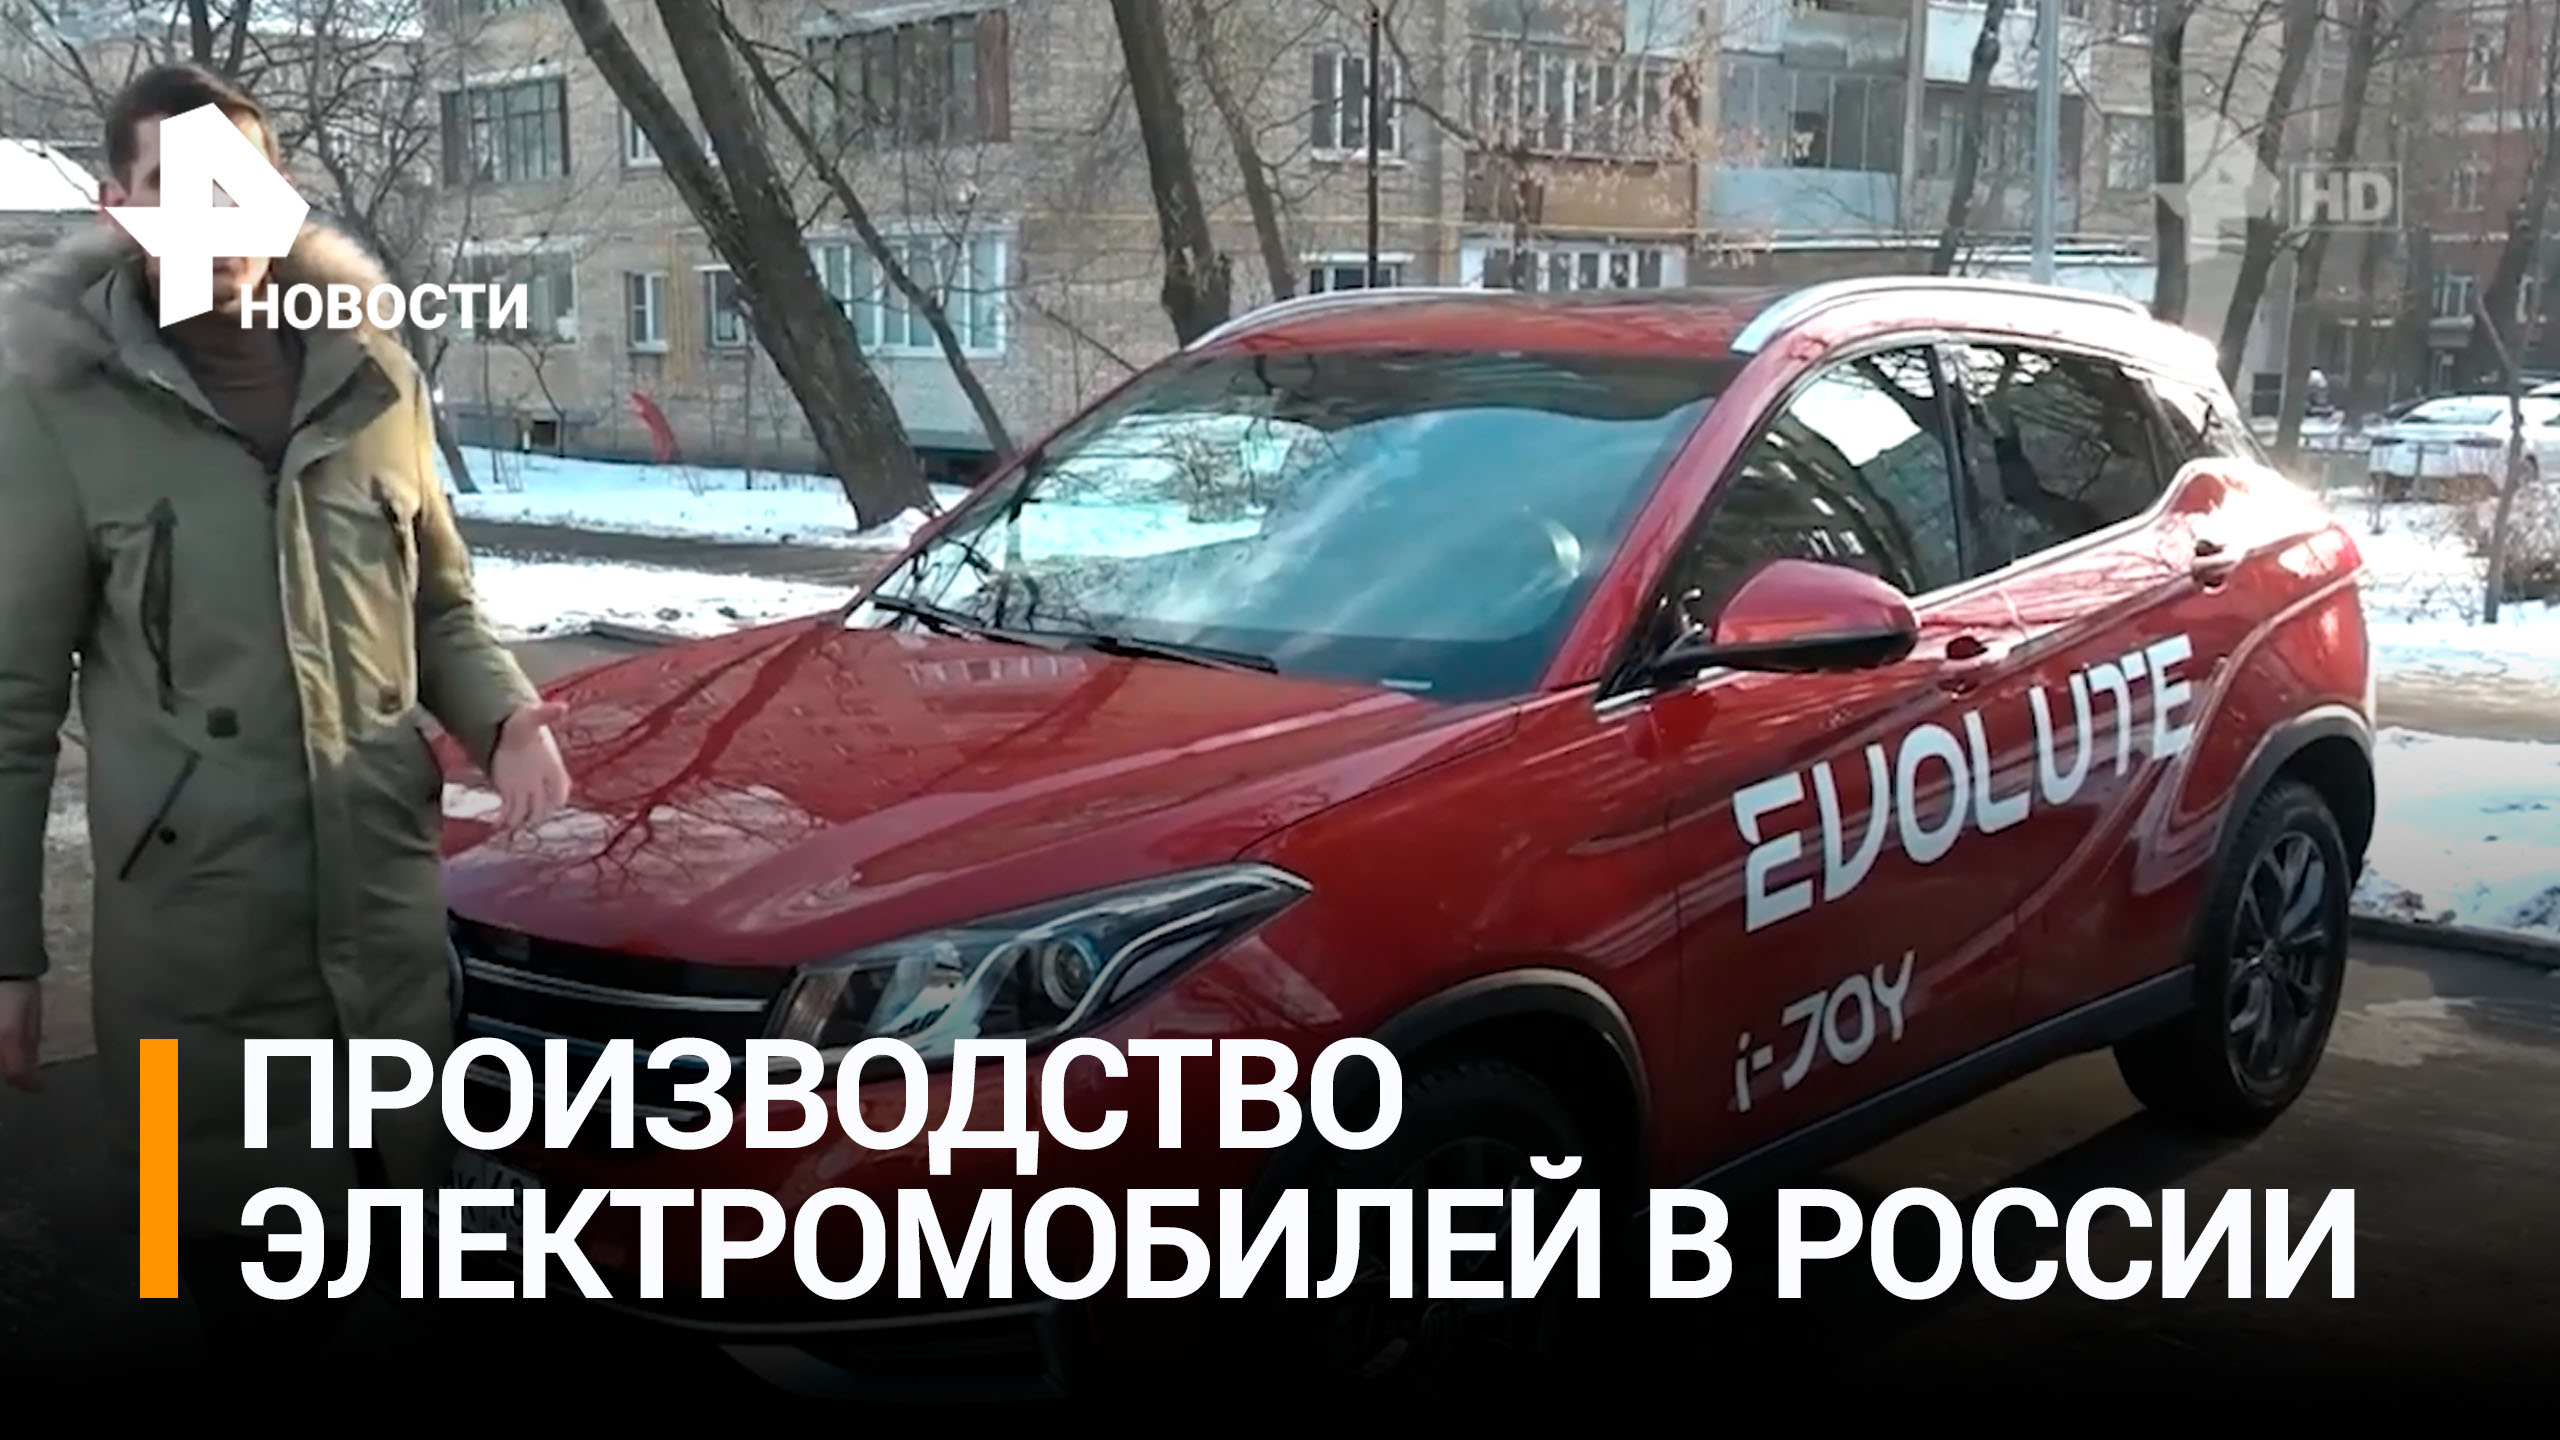 Шаг в будущее: как в России развивают производство электромобилей / РЕН Новости